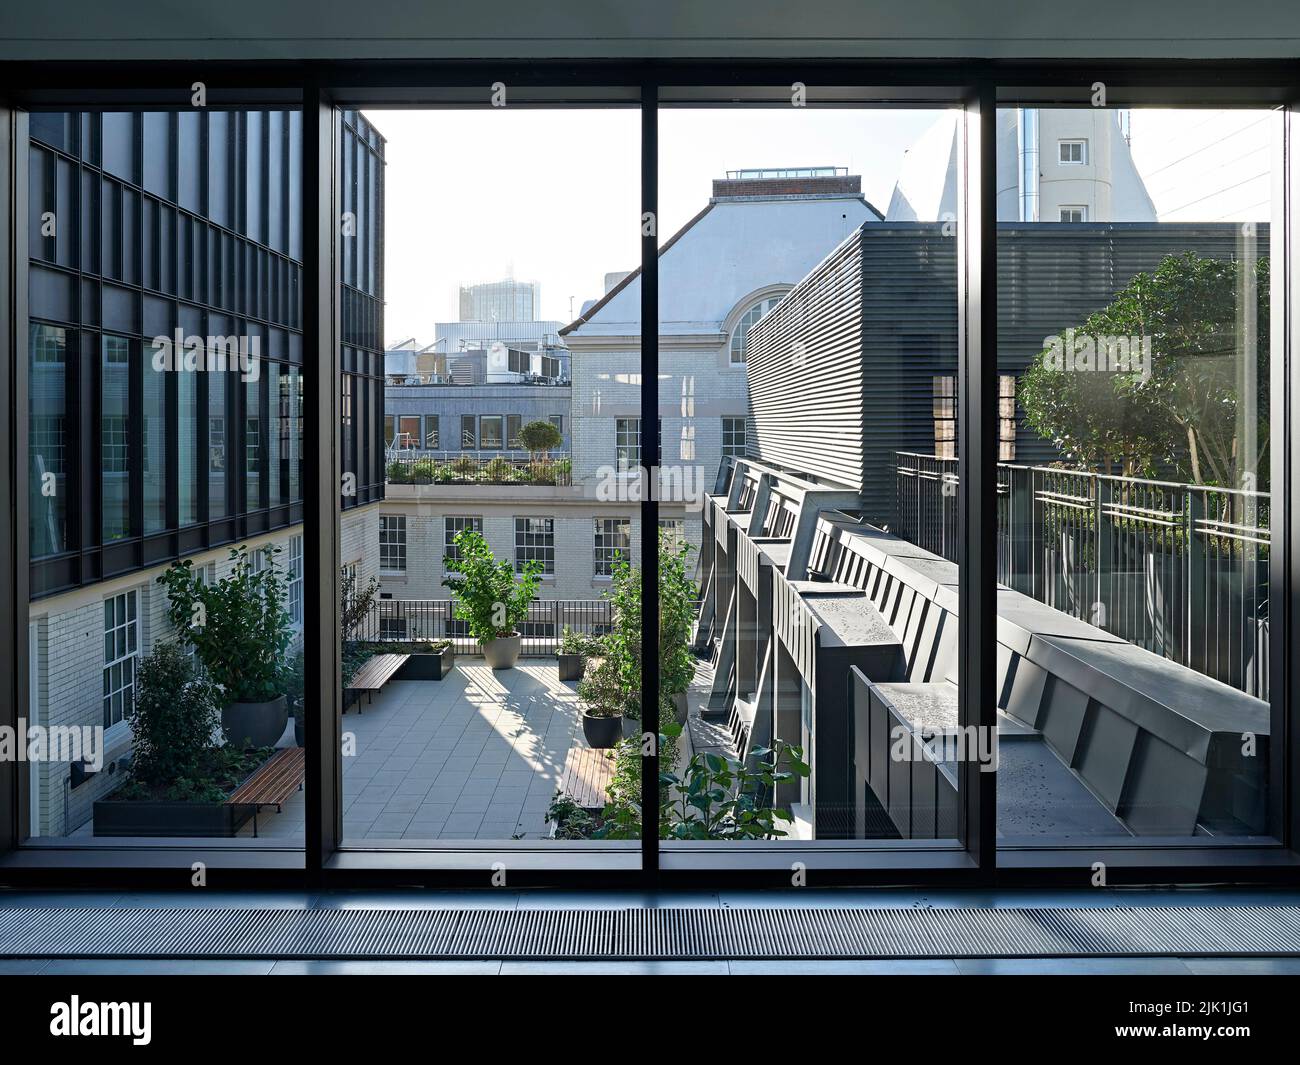 Vue sur la terrasse sur le toit. The Gilbert & One Lackington, Londres, Royaume-Uni. Architecte: Stiff + Trevillion Architects, 2021. Banque D'Images